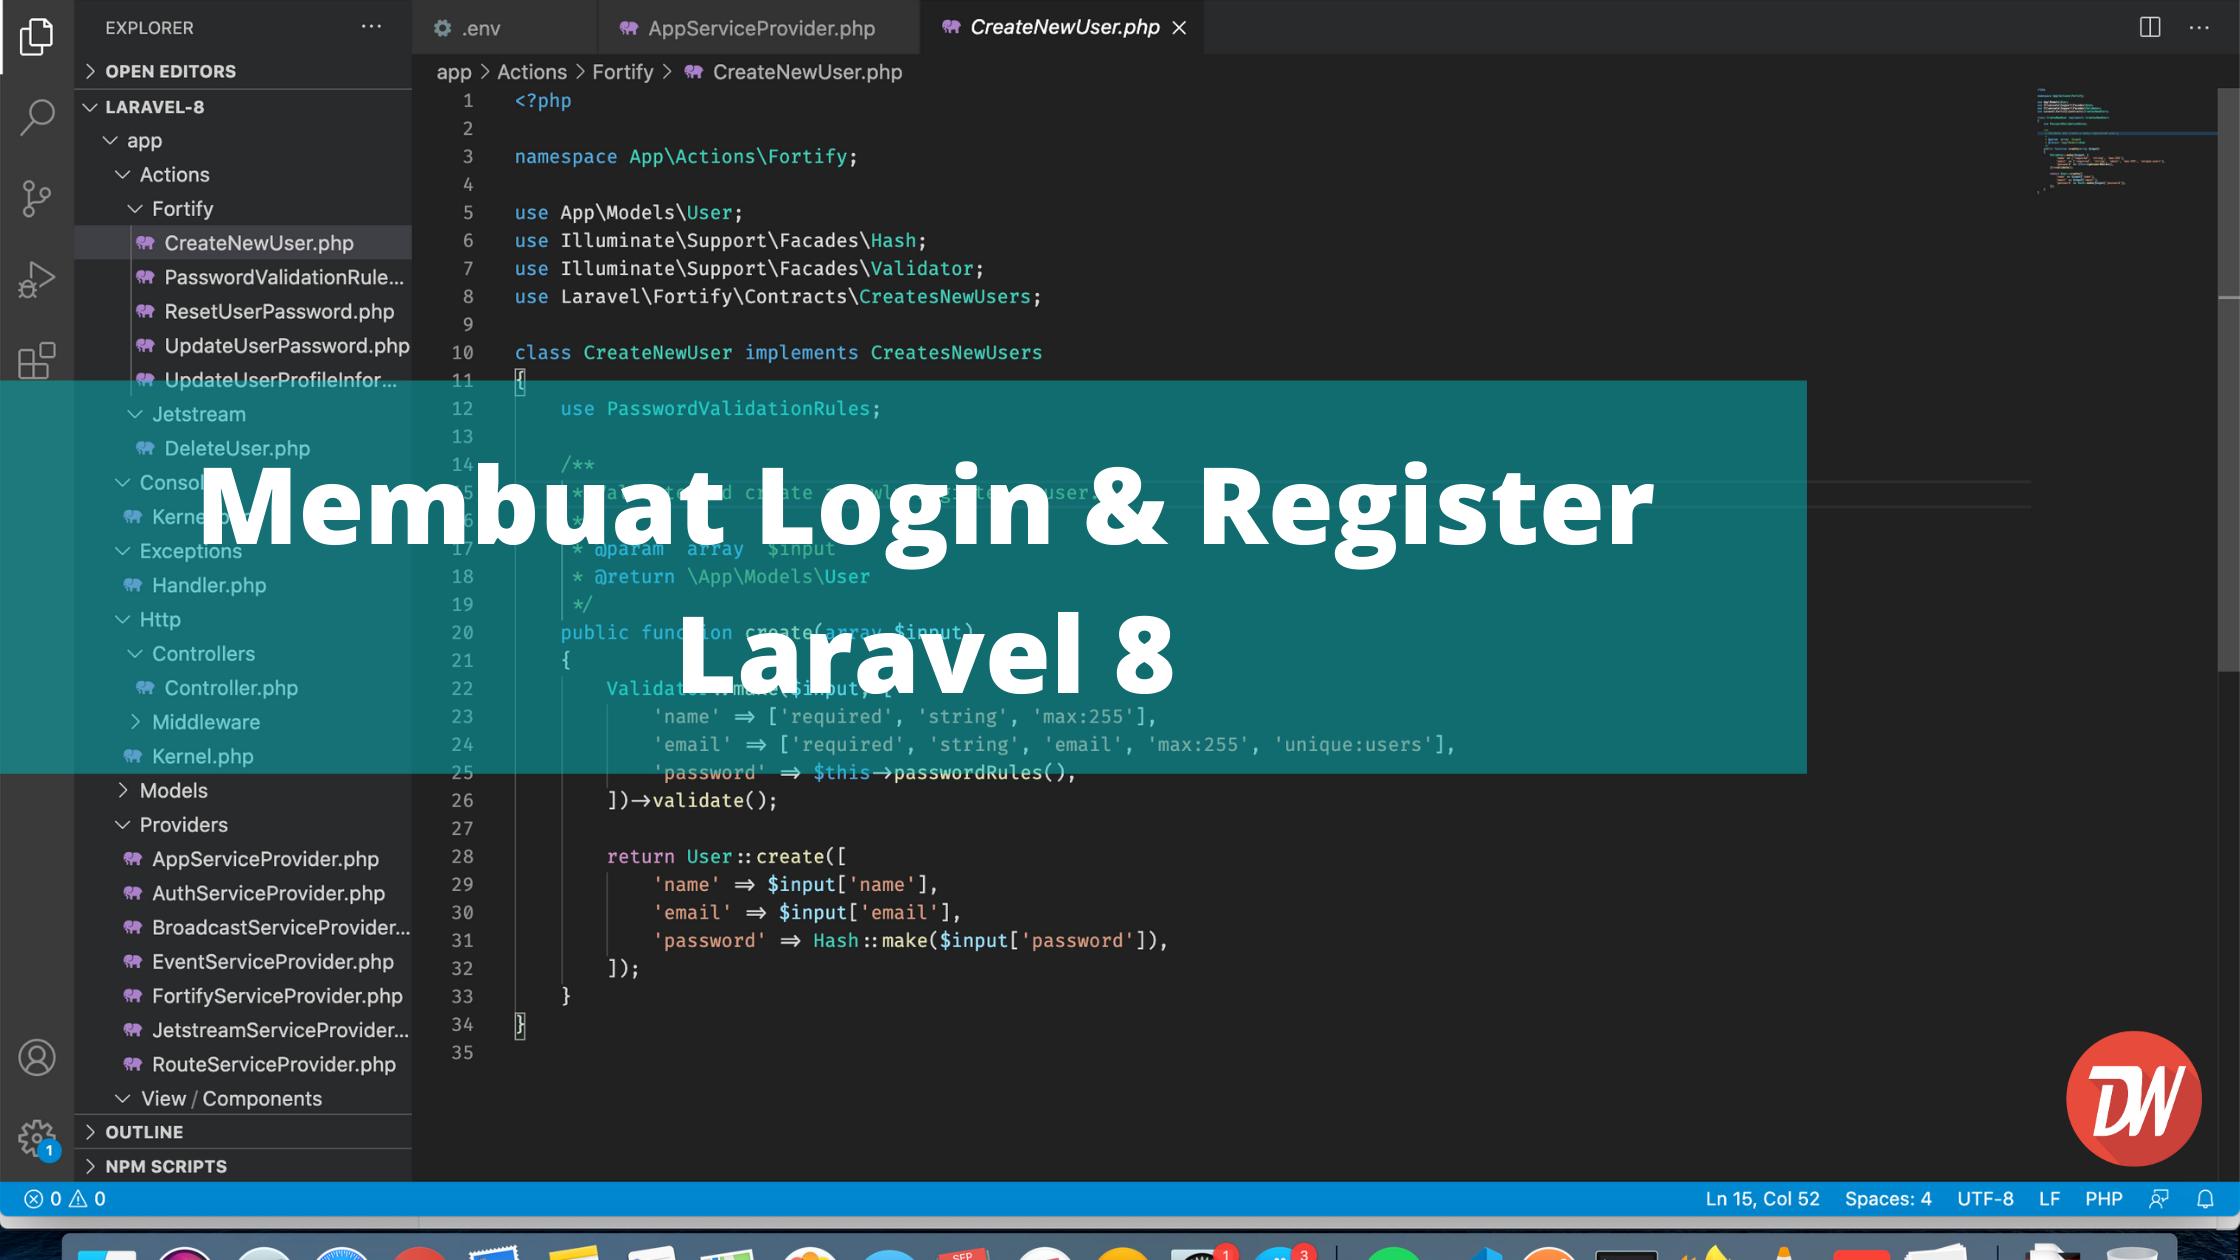 Membuat Login & Register Laravel 8